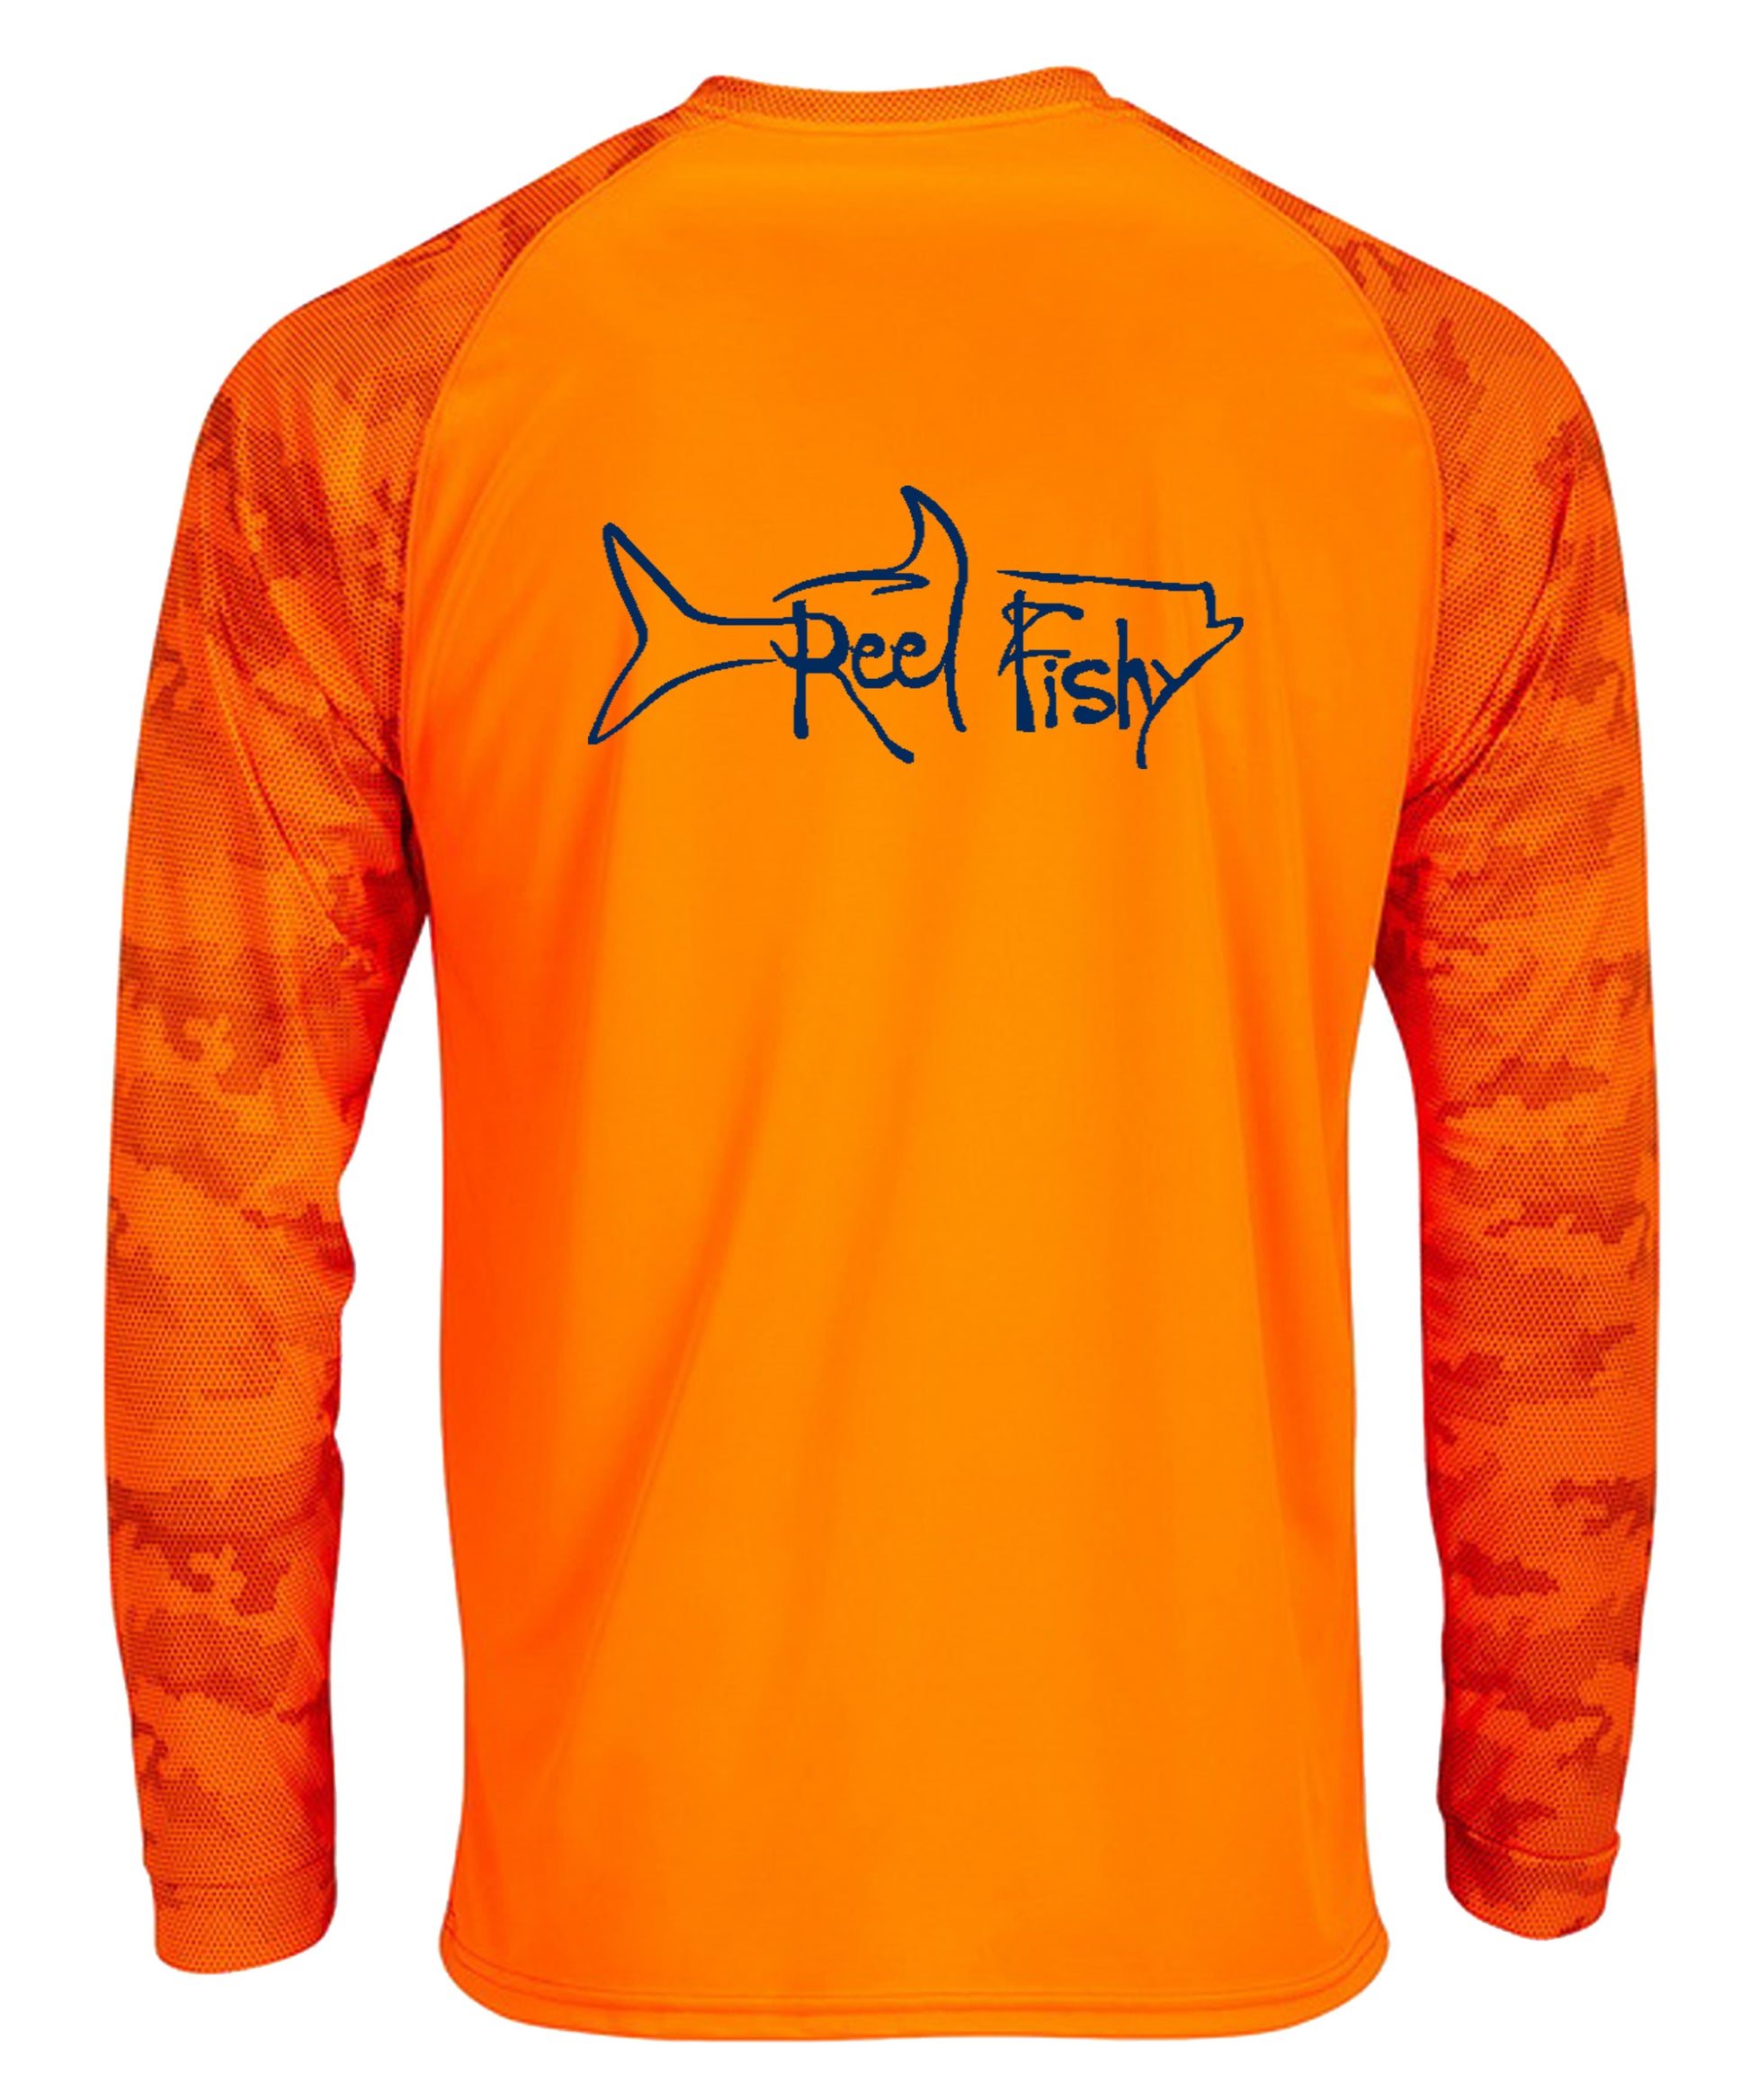 Fishing Black Orange Camouflage Custom Name UPF 30+ Fishing Apparel NQS2514, Kid Long Sleeves UPF / L